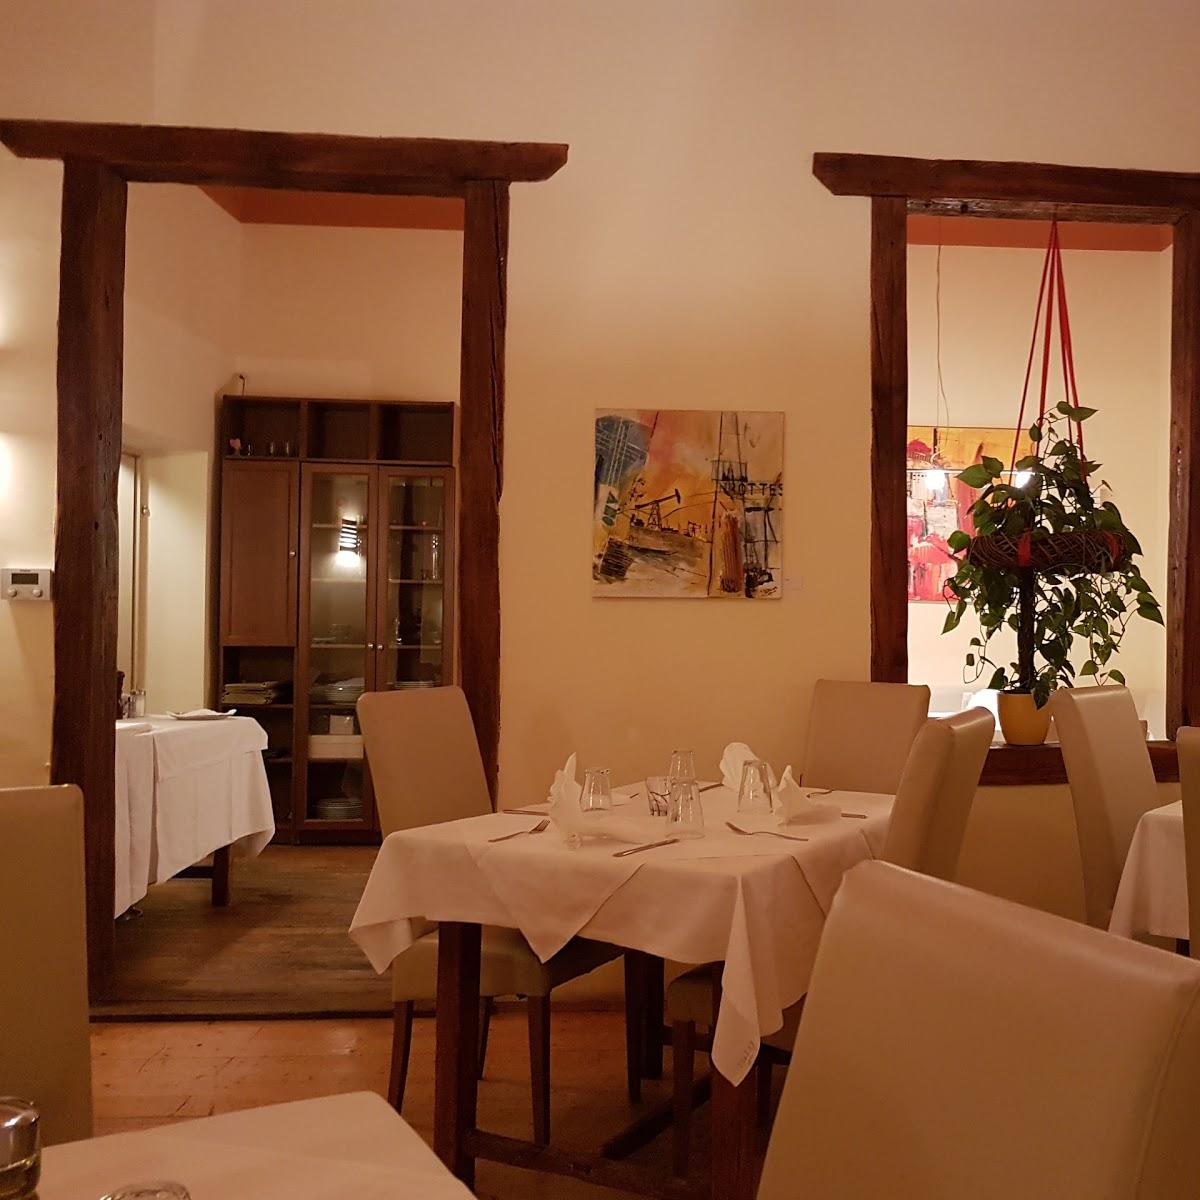 Restaurant "Montelini" in Hagenbrunn